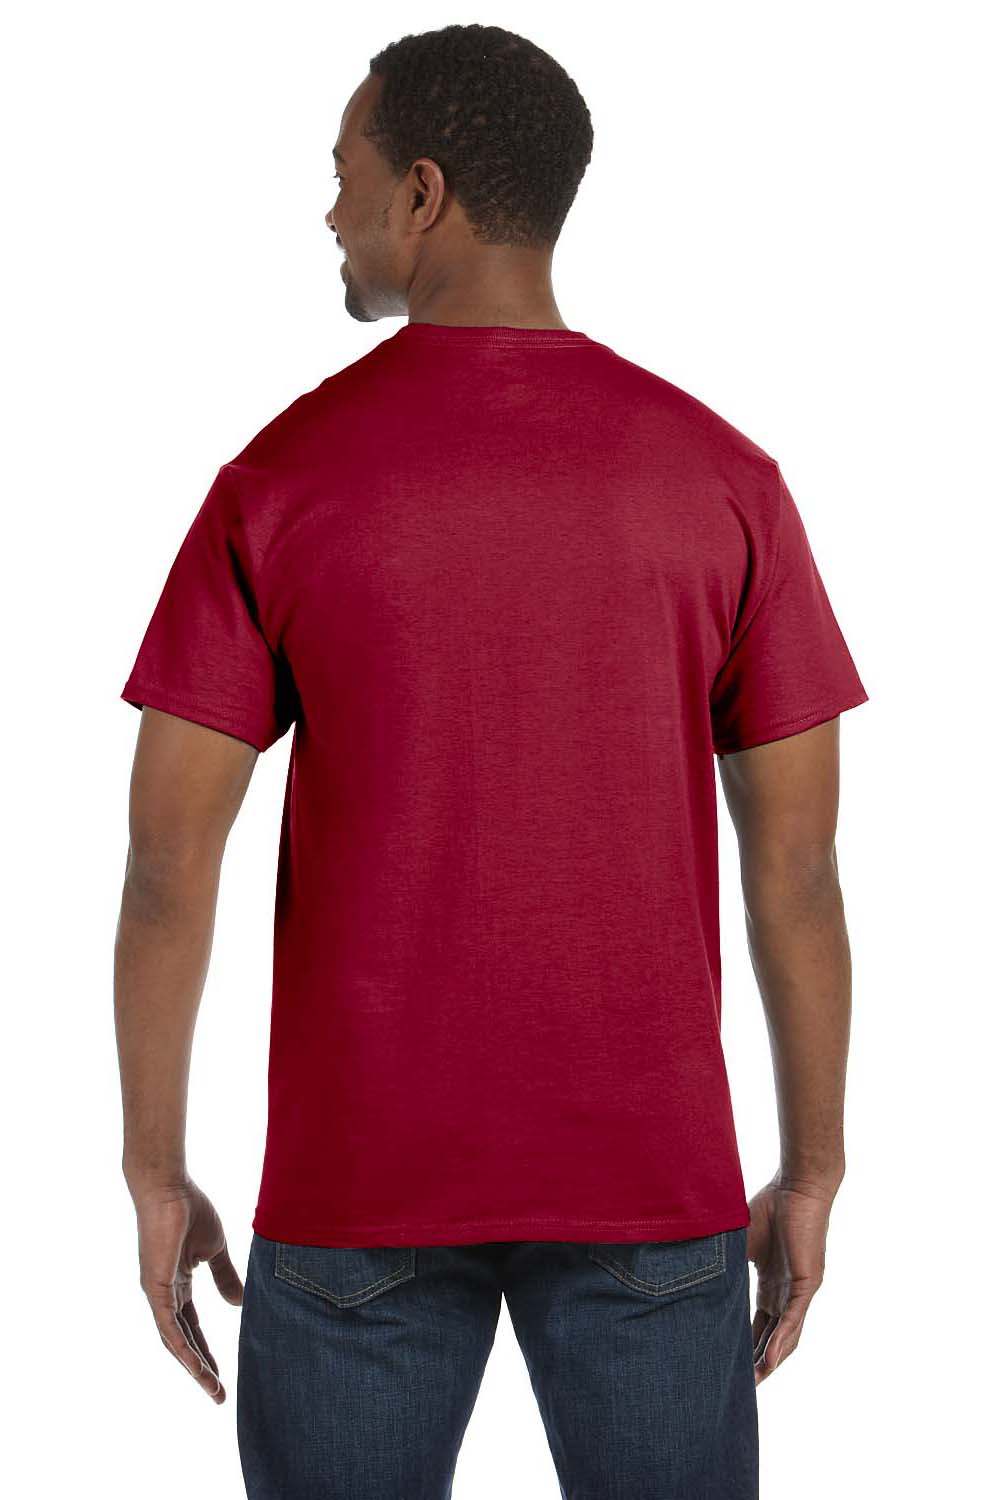 Jerzees 29M Mens Dri-Power Moisture Wicking Short Sleeve Crewneck T-Shirt Cardinal Red Back